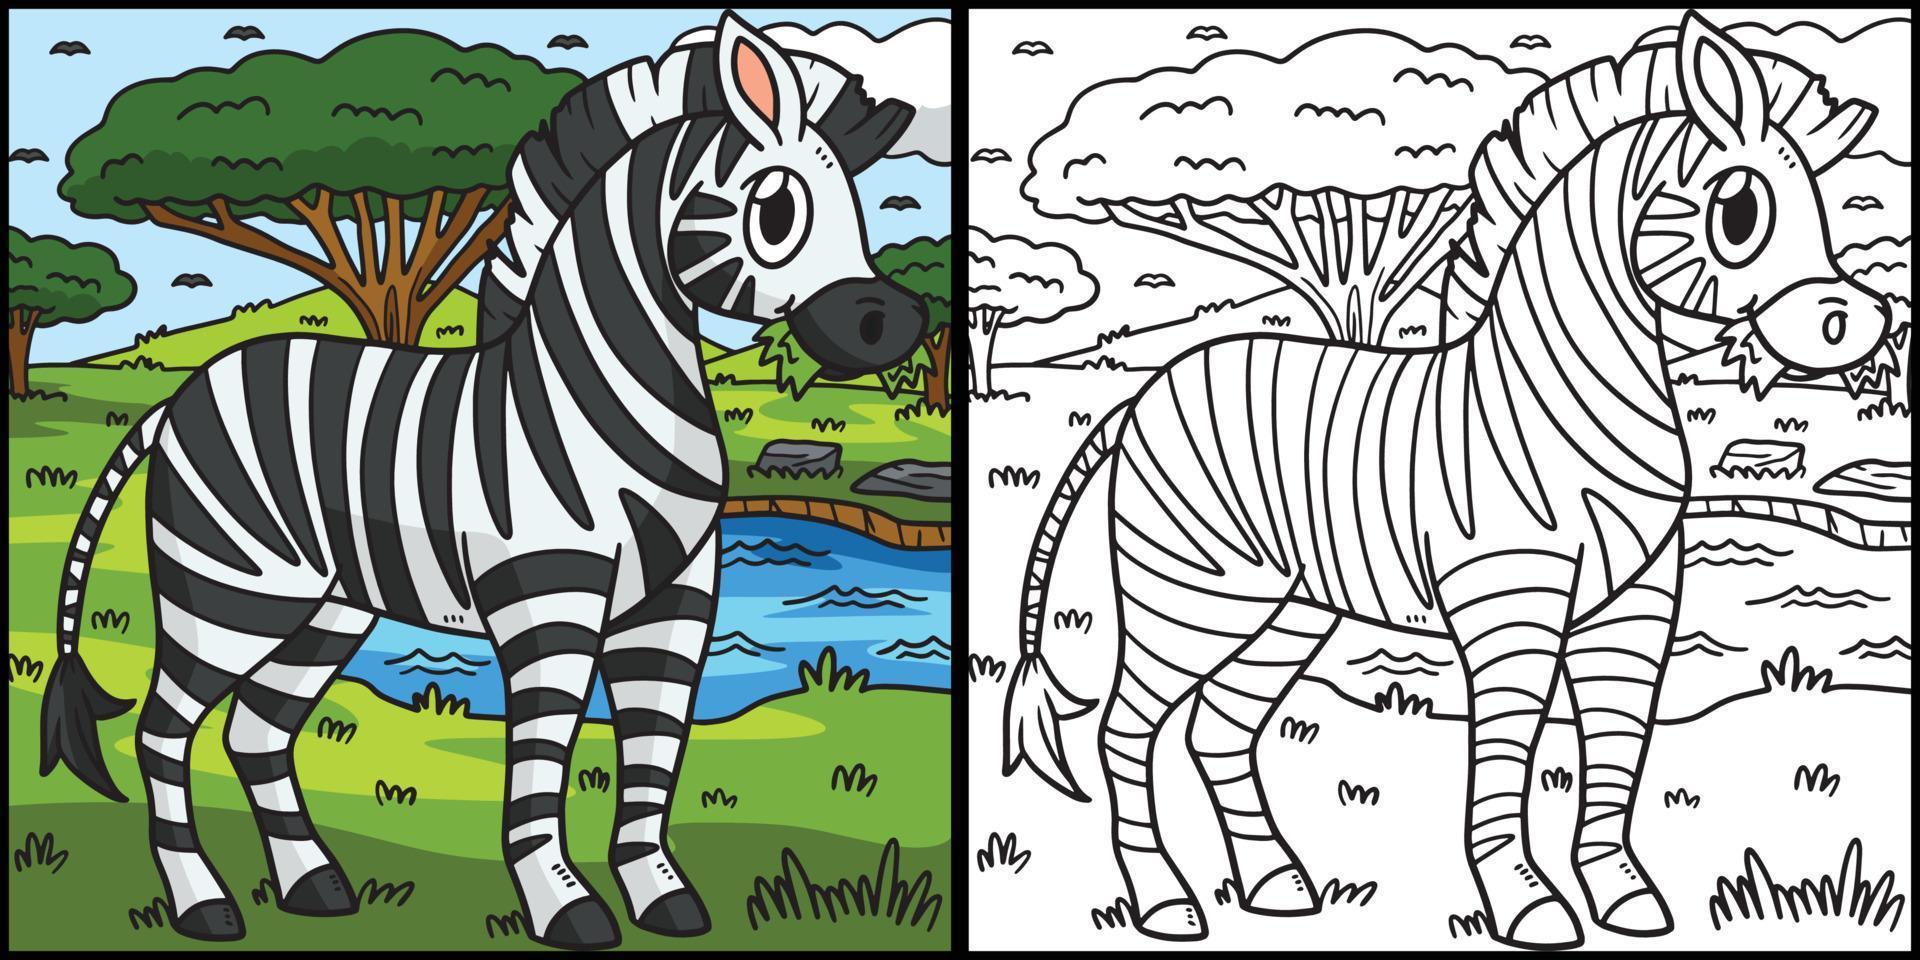 illustrazione colorata della pagina di colorazione della zebra vettore